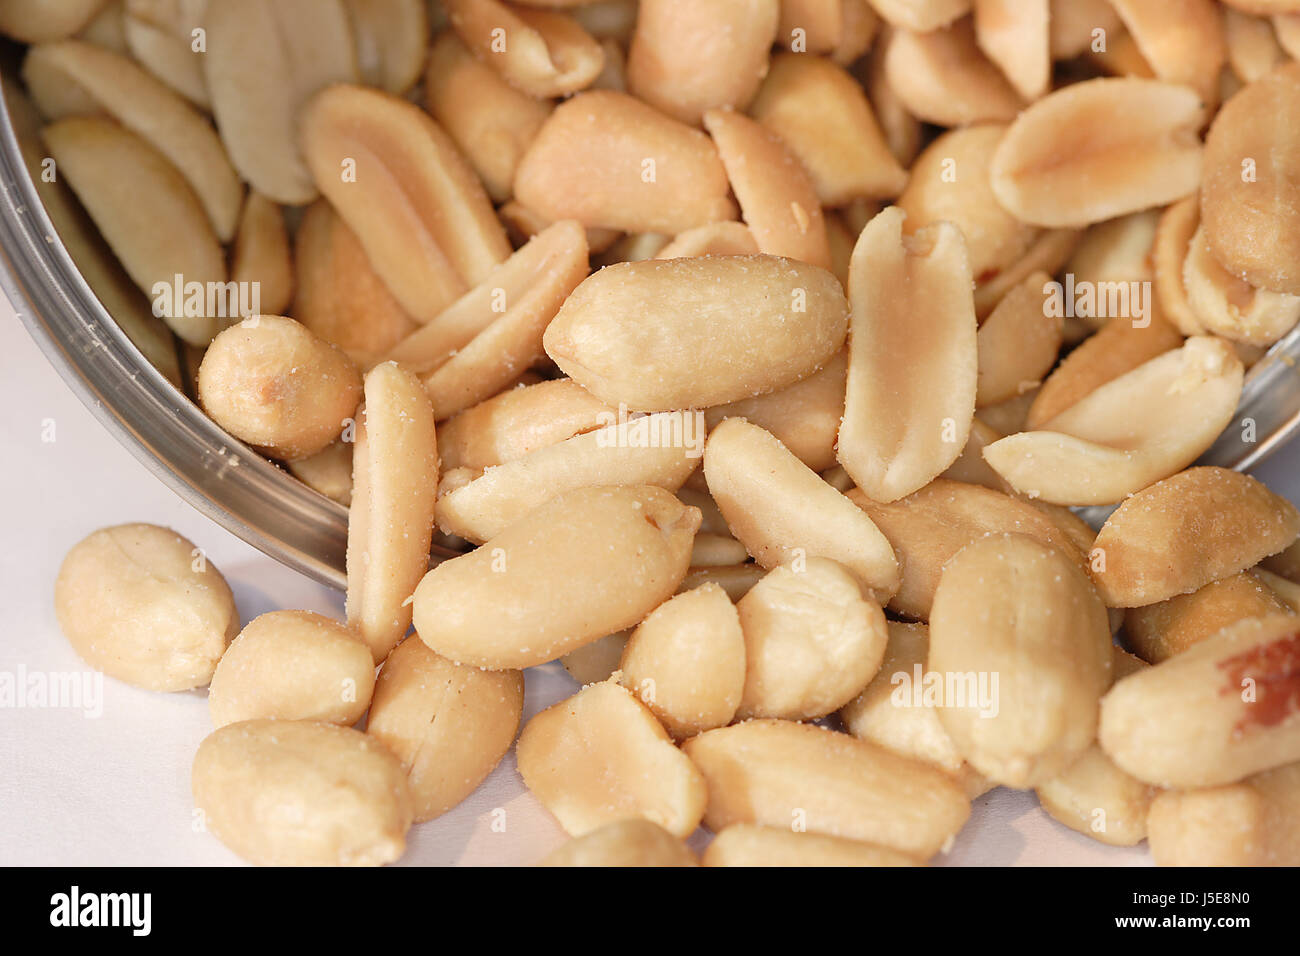 Aliment alimentaire arachides tin oxydées legume grignotage salé rôti snack doze Banque D'Images